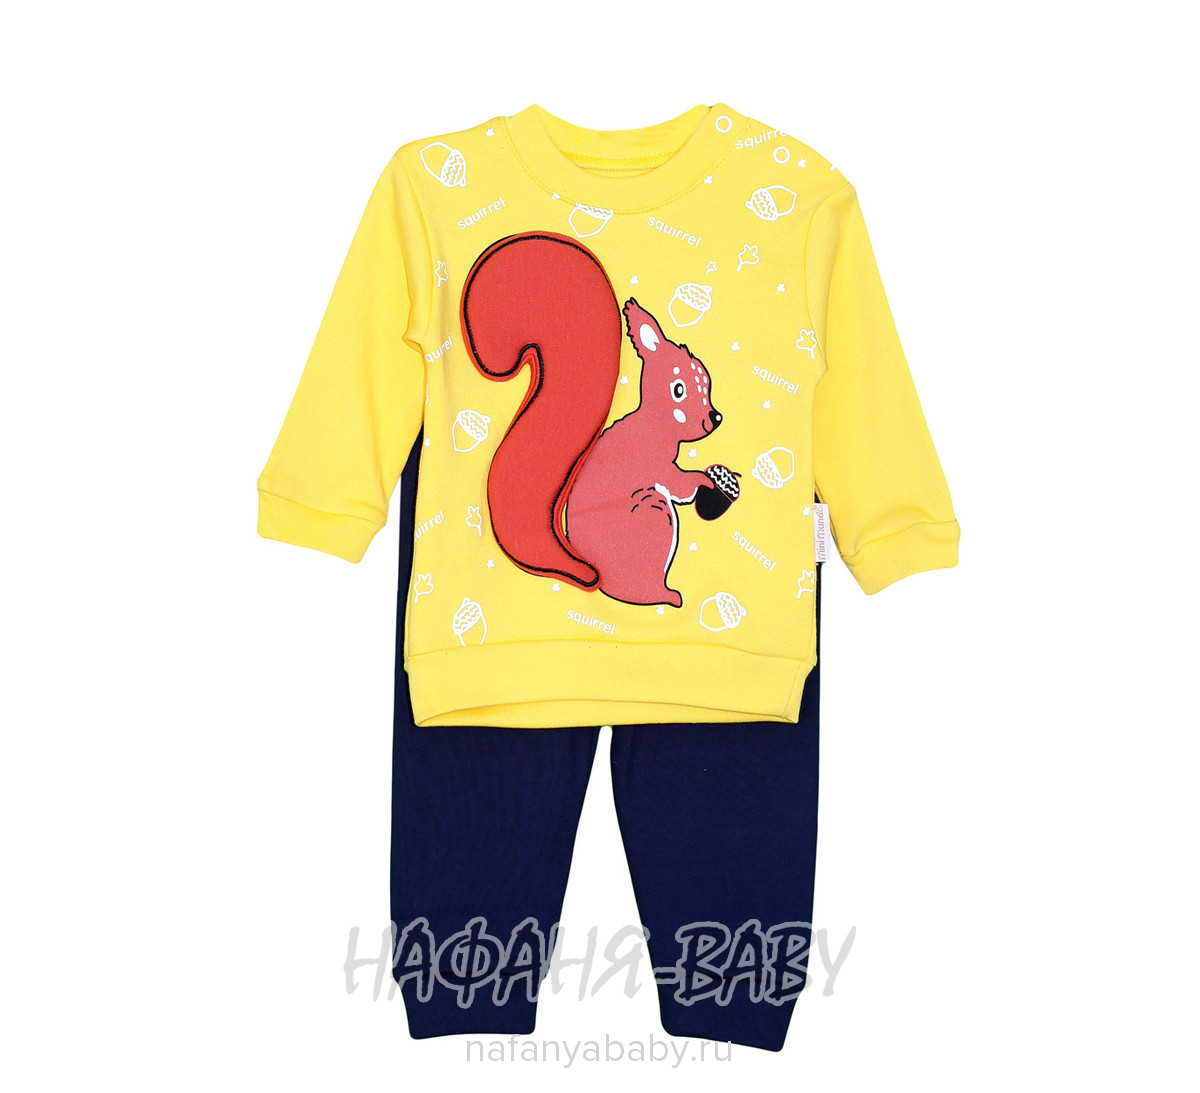 Детский костюм БЕЛОЧКА (кофта+брюки) Mini MUNDO арт: 6689, 1-4 года, 0-12 мес, оптом Турция